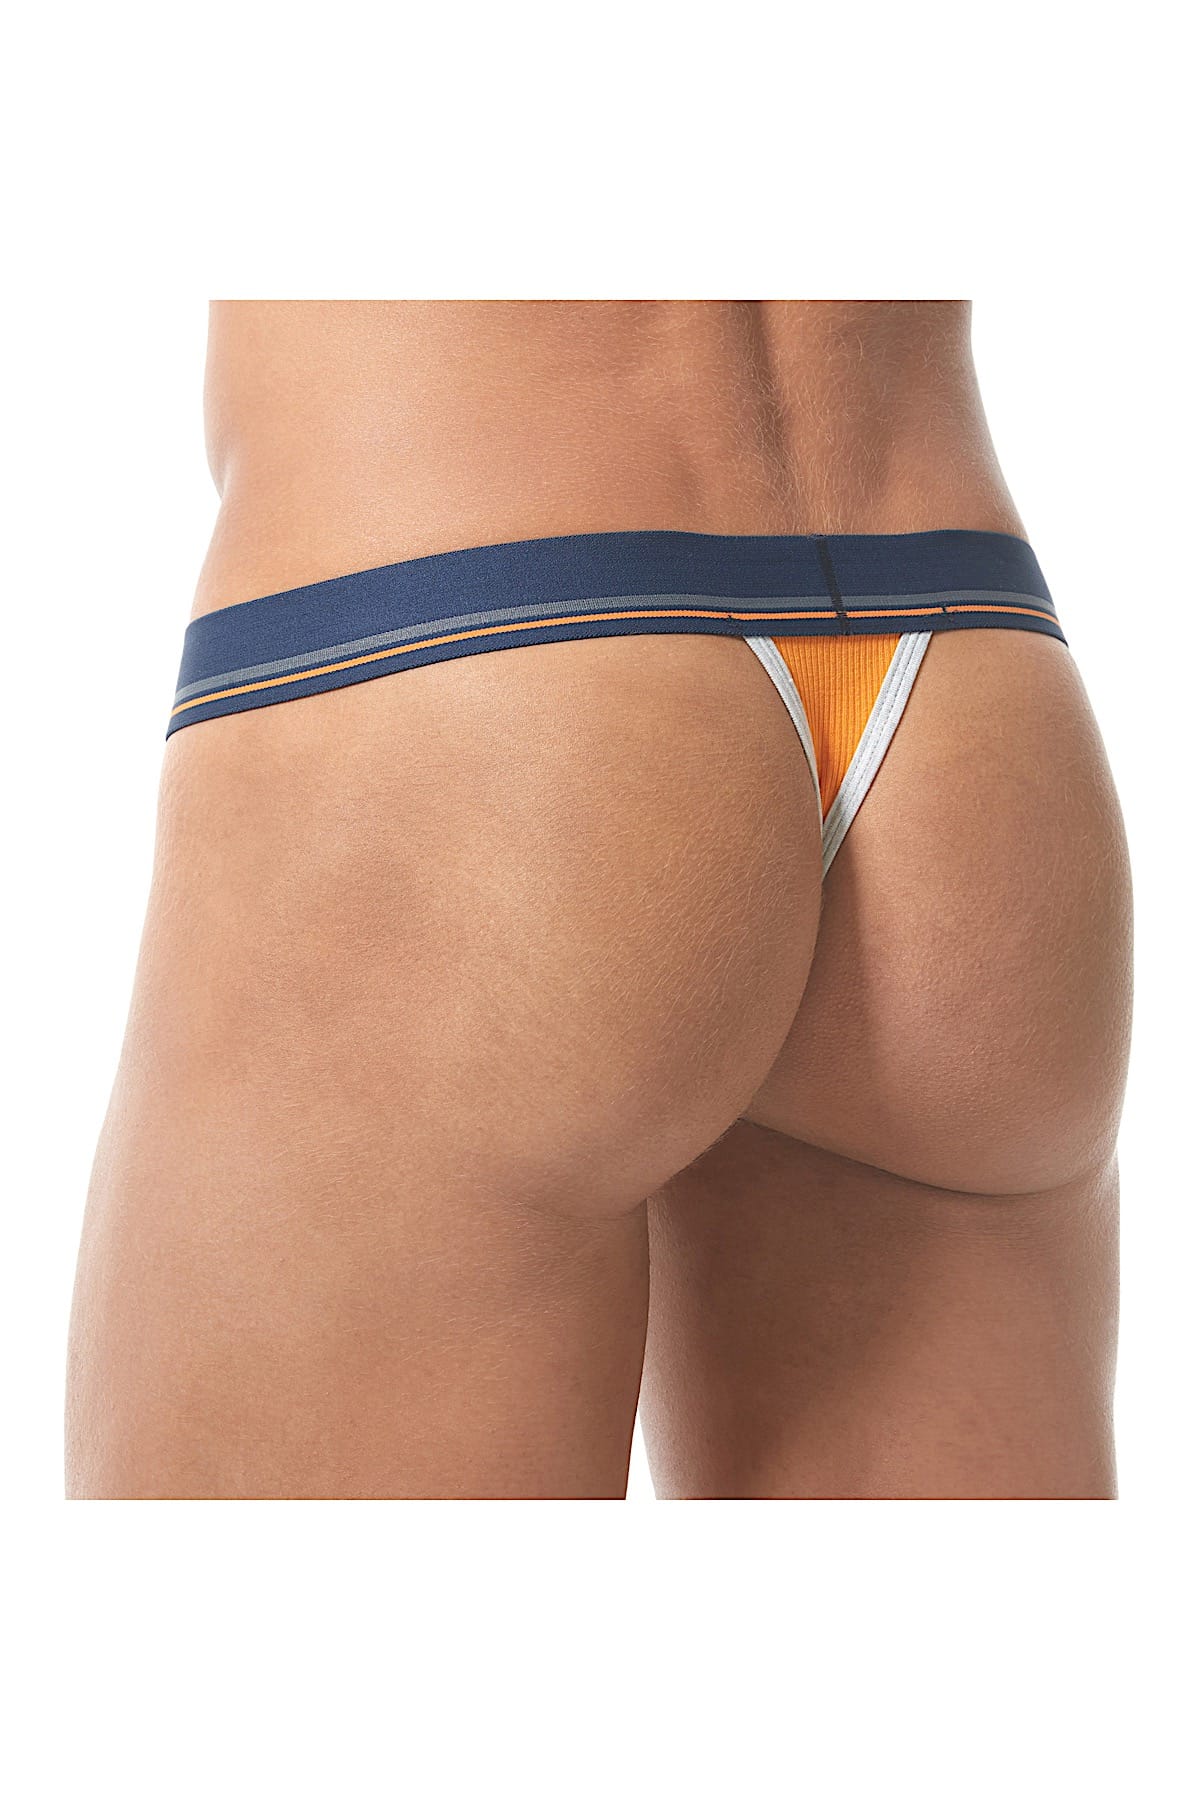 Gregg Homme Orange Sense Ribbed Modal Thong